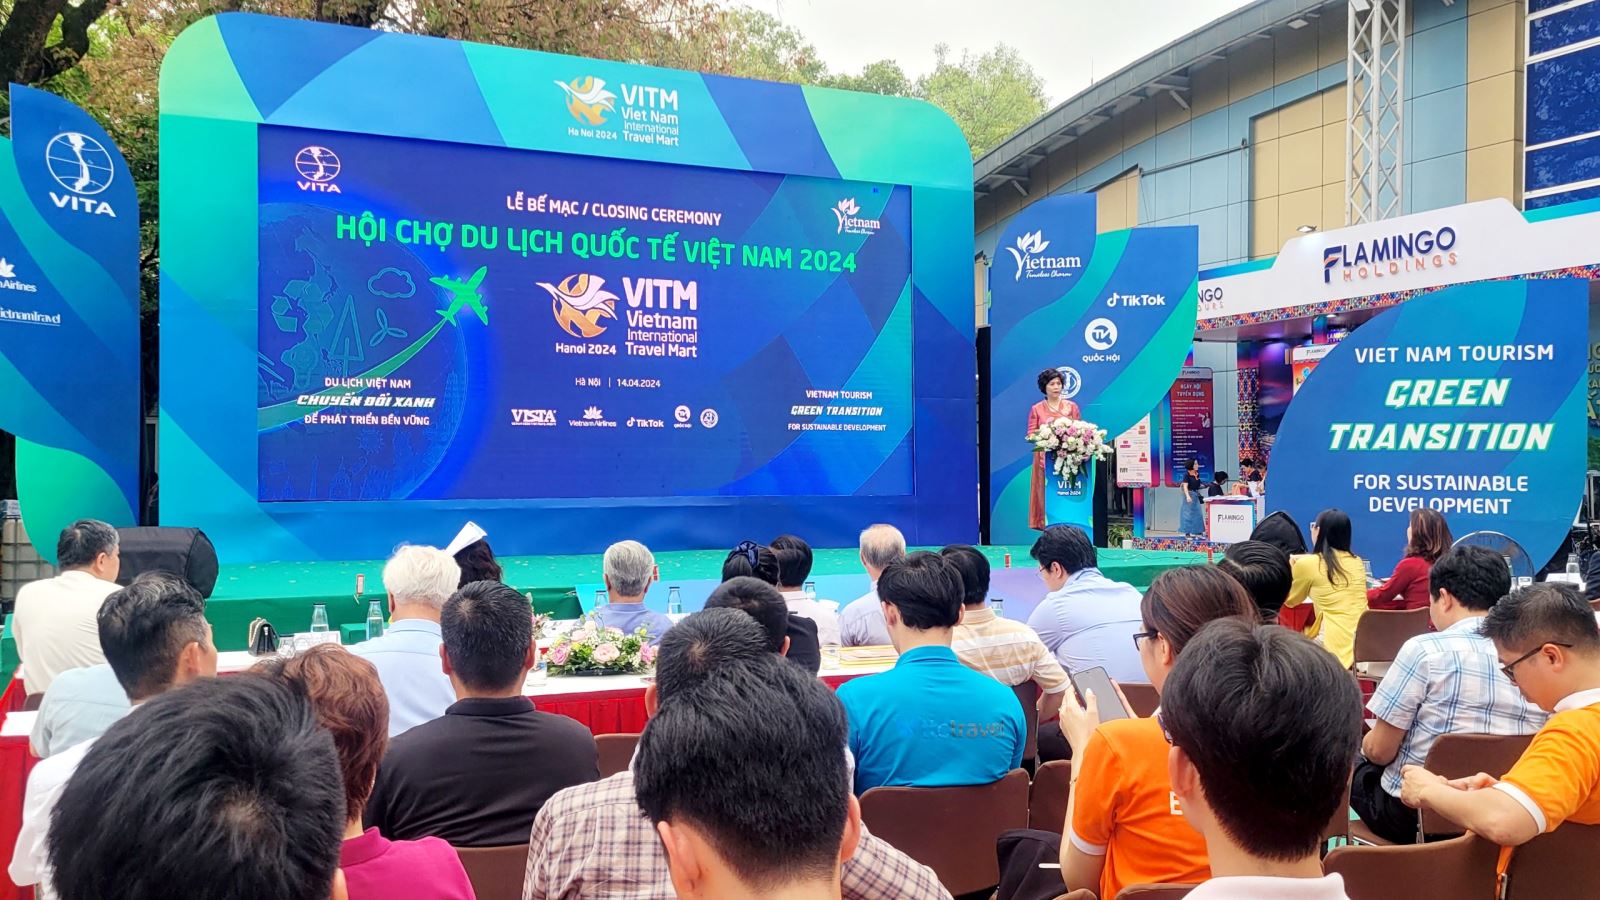 Hội chợ du lịch quốc tế VITM Hà Nội 2024 thu hút gần 80.000 lượt khách tới tham quan, mua tour dịp hè.